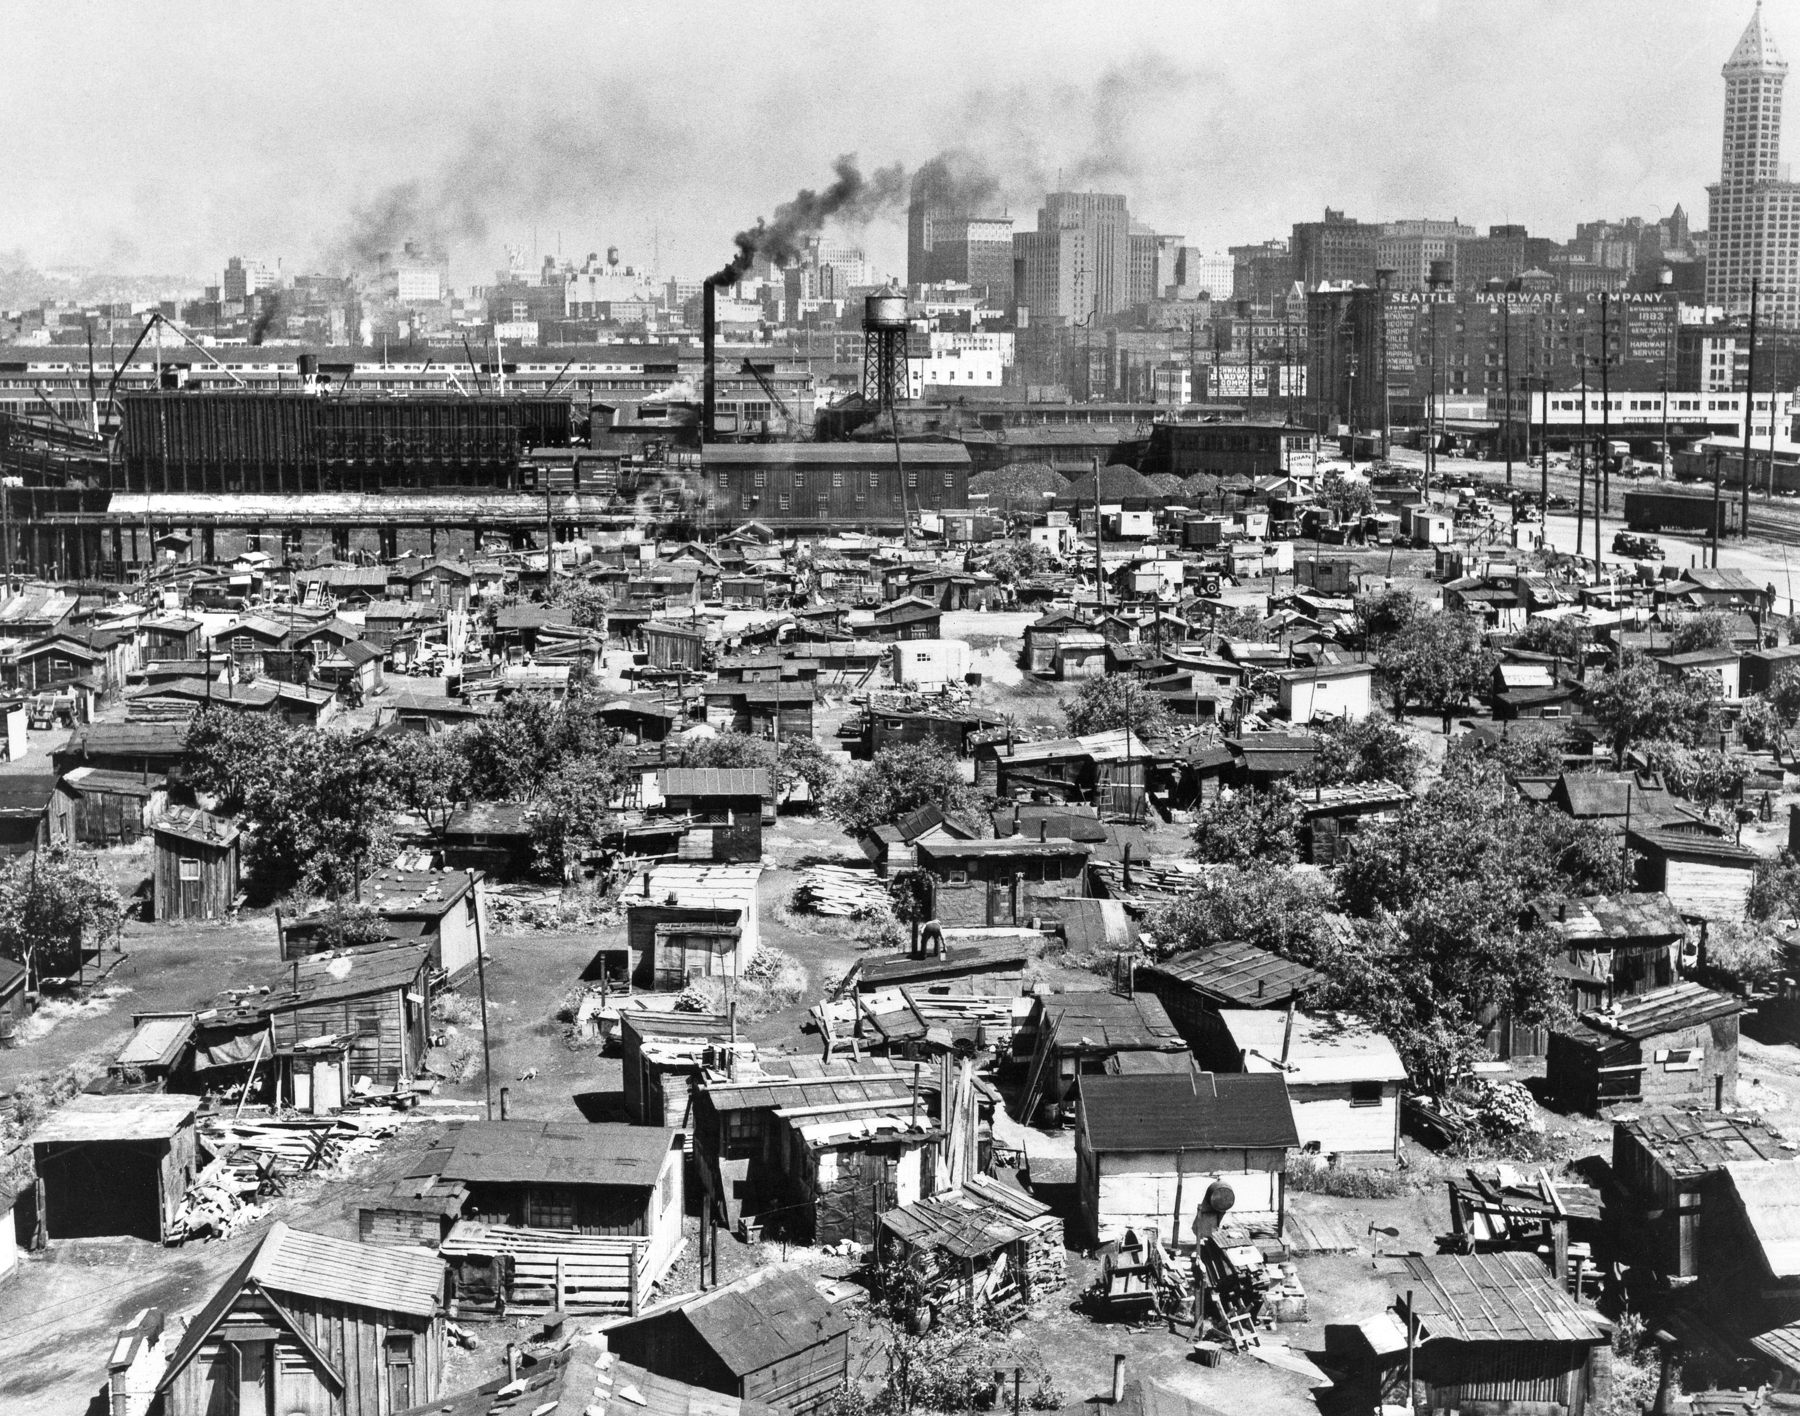 Fotografia em preto e branco. Vista aérea de uma zona urbana com diversos casebres lado a lado, amontoados sobre um grande terreno. Em segundo plano, fábricas e usinas, com chaminés expelindo fumaça.